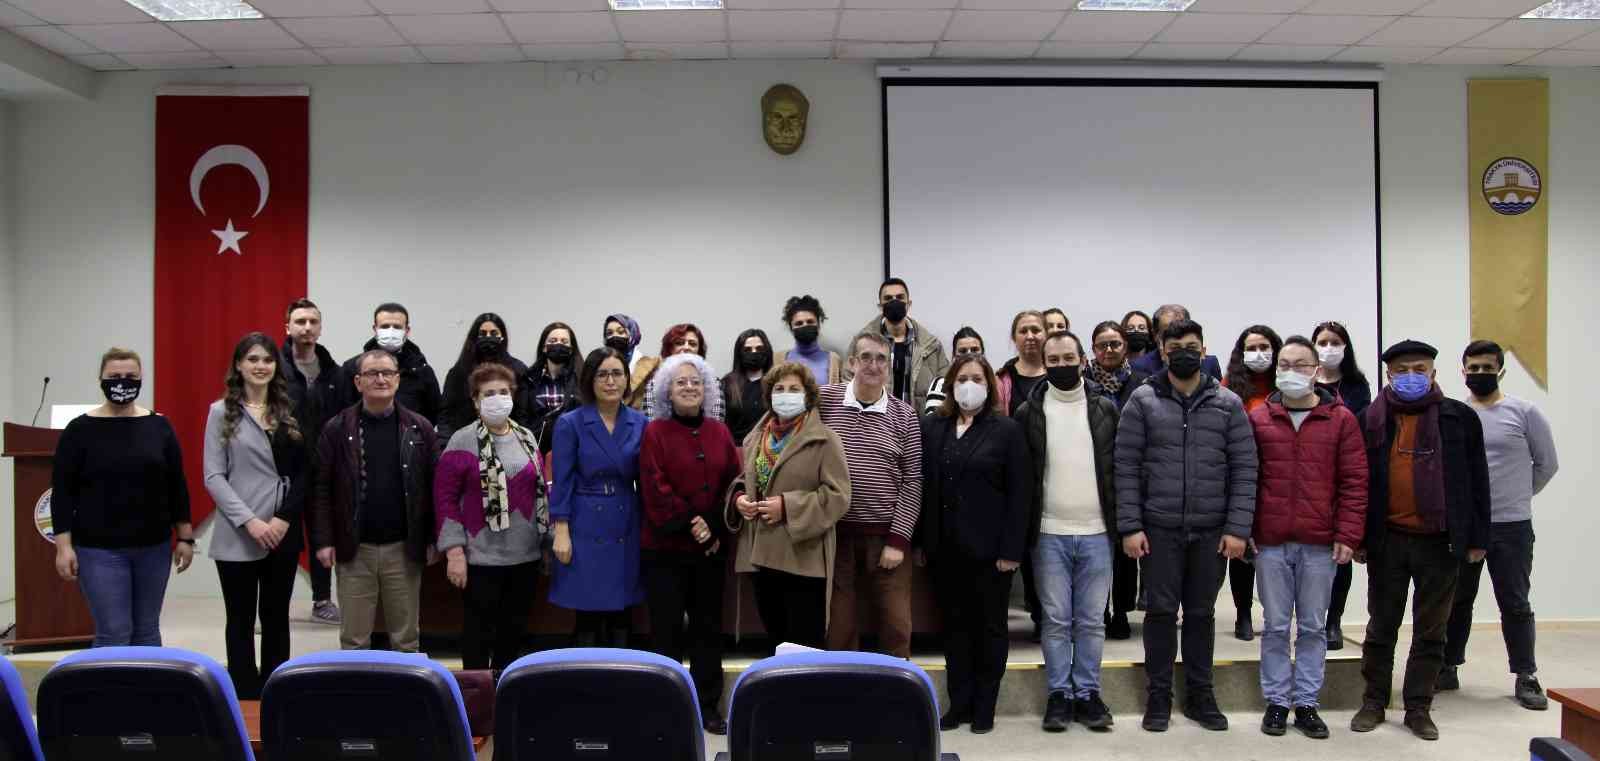 Edirnekâri konferansı düzenlendi #edirne